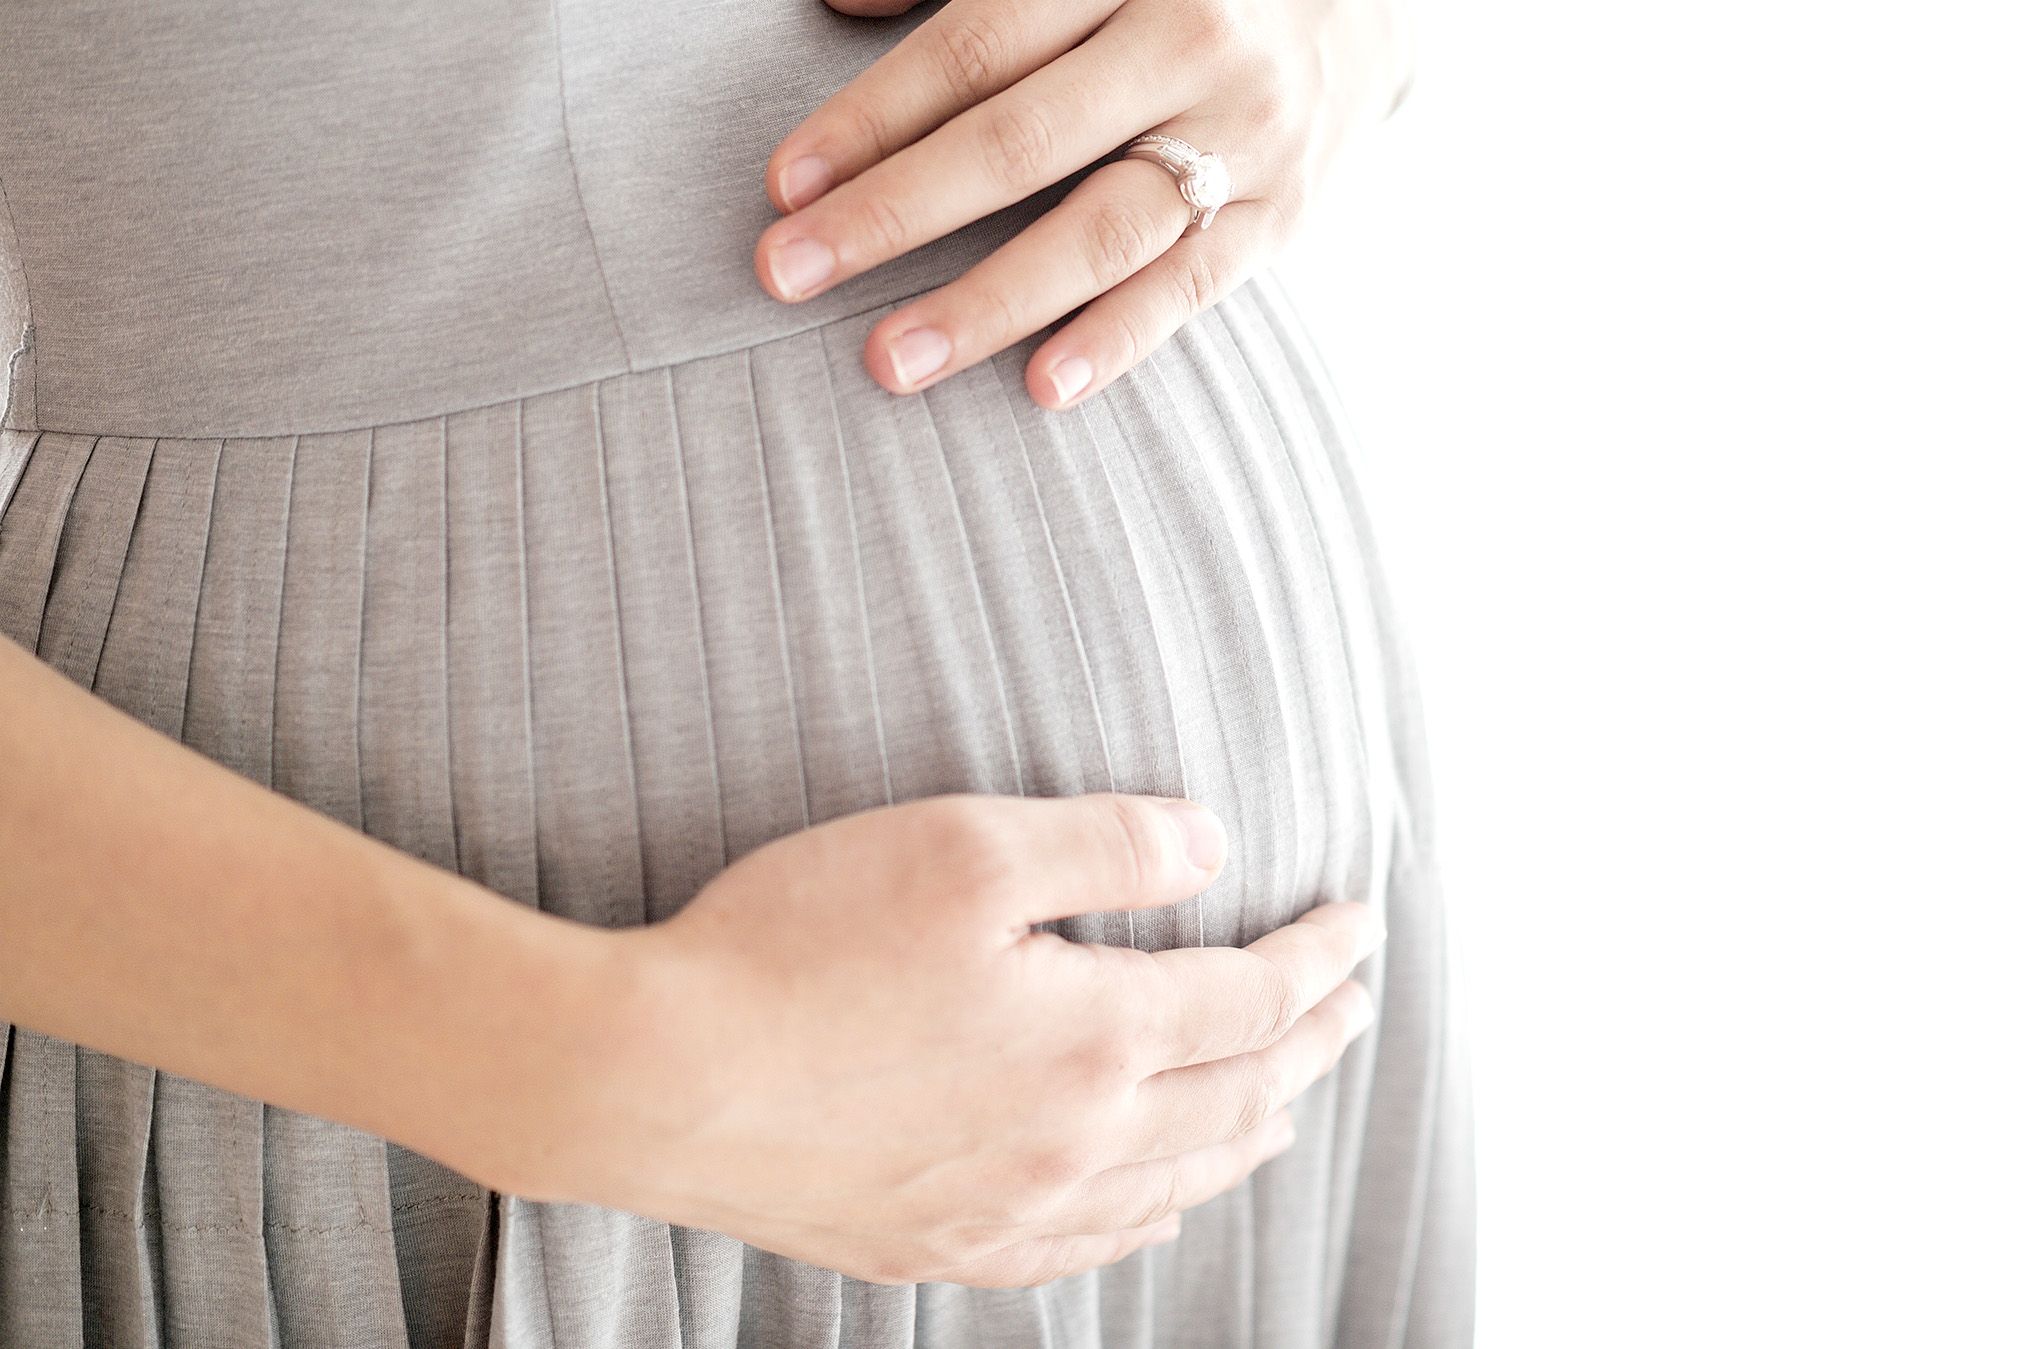 Анемия во время беременности может привести к частым слабостям